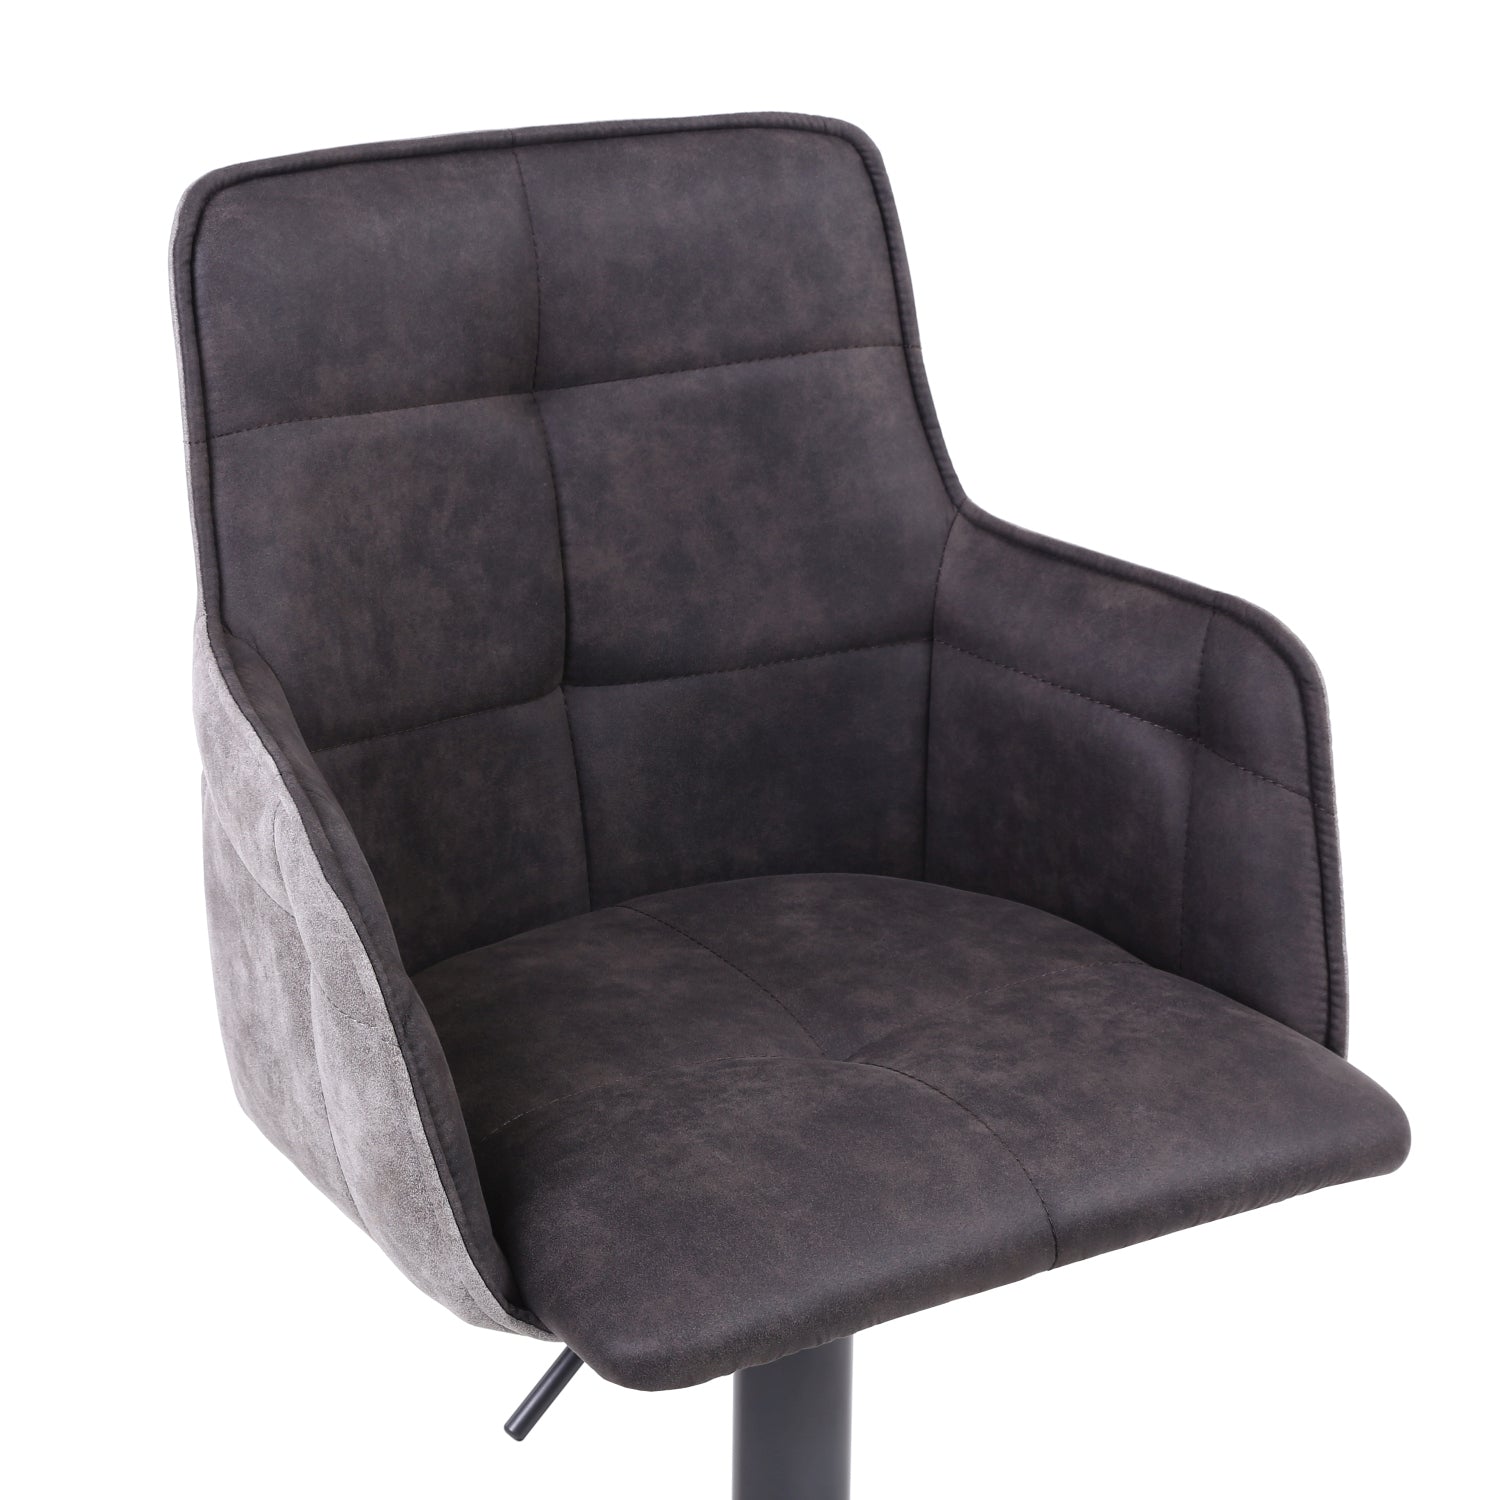 Orion adjustable bar stool from Top Secret Furniture